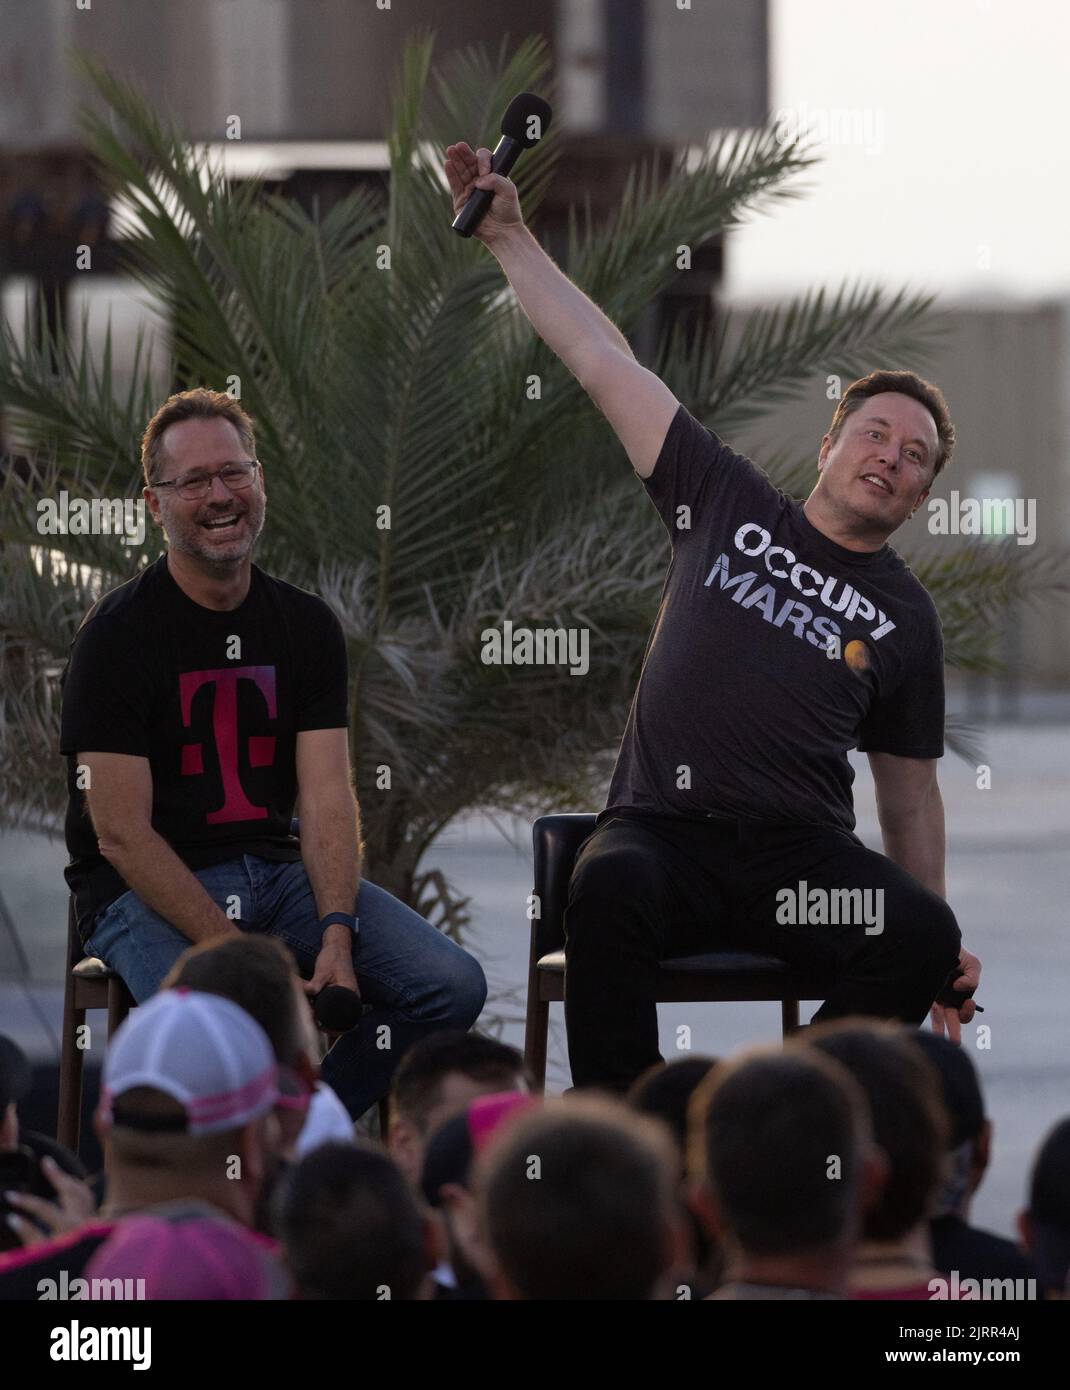 Elon Musk Gestures, ingénieur en chef de SpaceX lors d'une conférence de presse avec Mike Sievert, PDG de T-Mobile, à la base de SpaceX Starbase de Brownsville, Texas, États-Unis, 25 août 2022. REUTERS/adrees Latif Banque D'Images